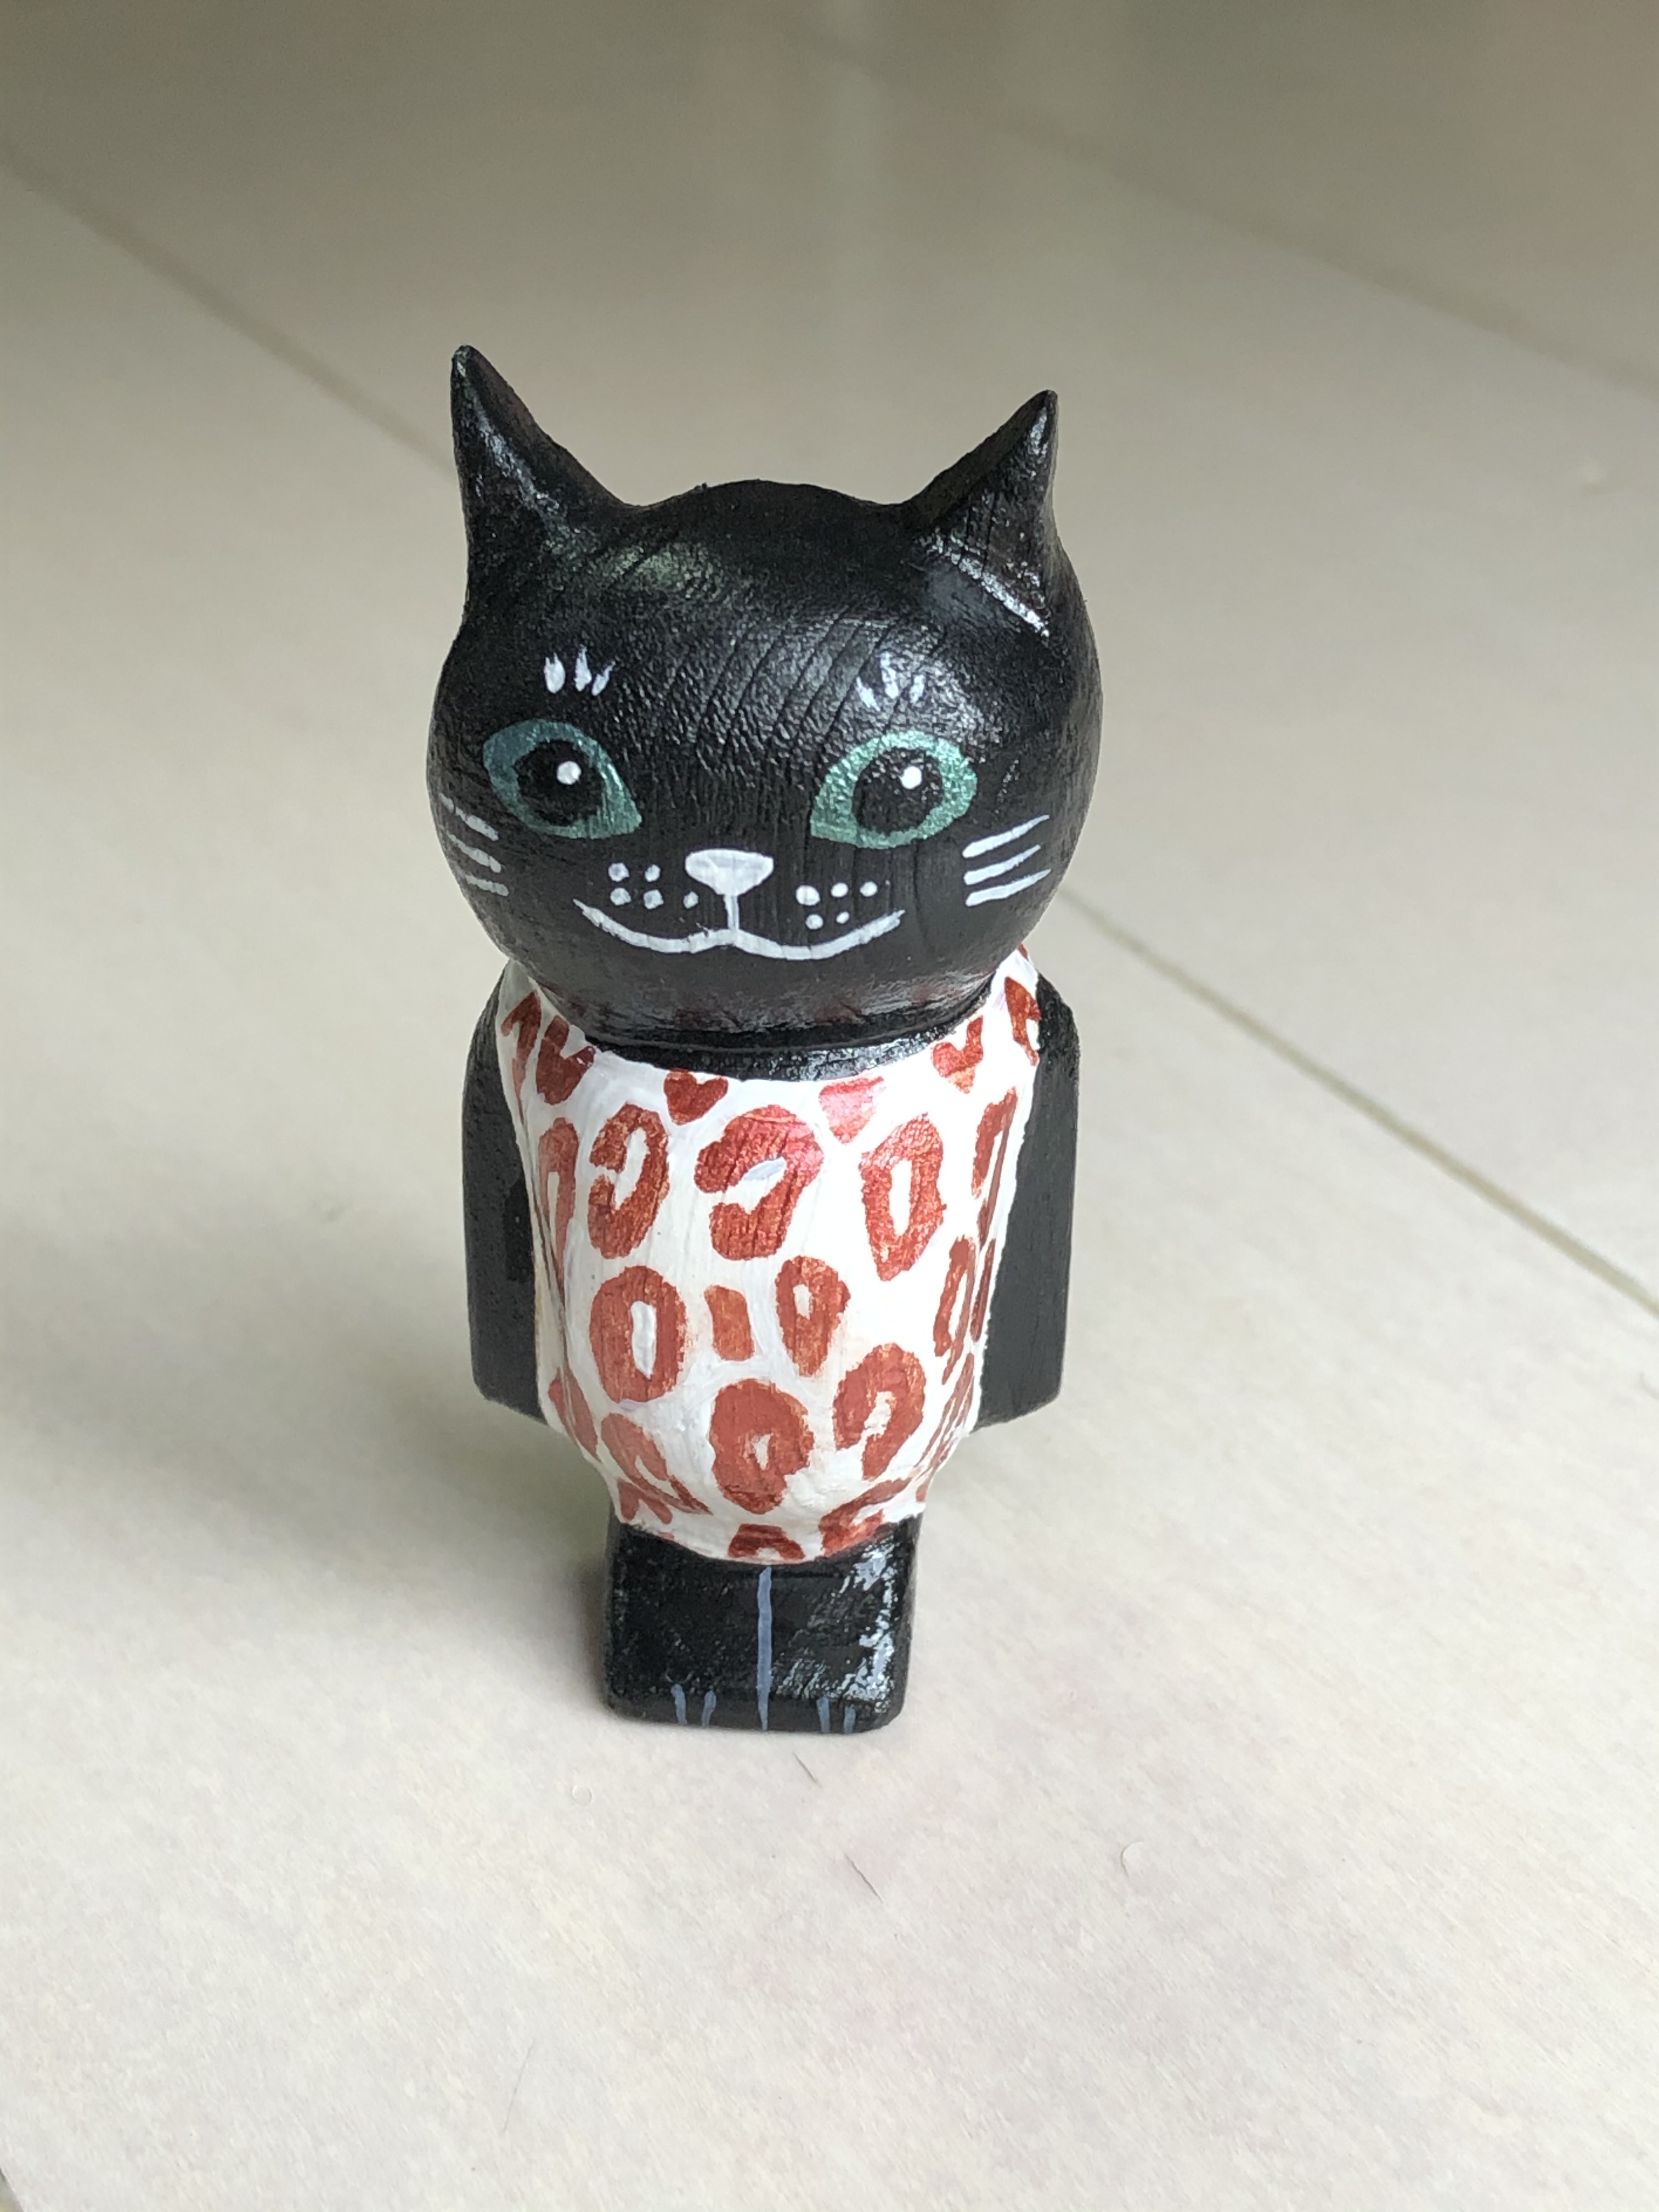 ヒョウ柄の服を着た黒猫マグネット Iichi ハンドメイド クラフト作品 手仕事品の通販